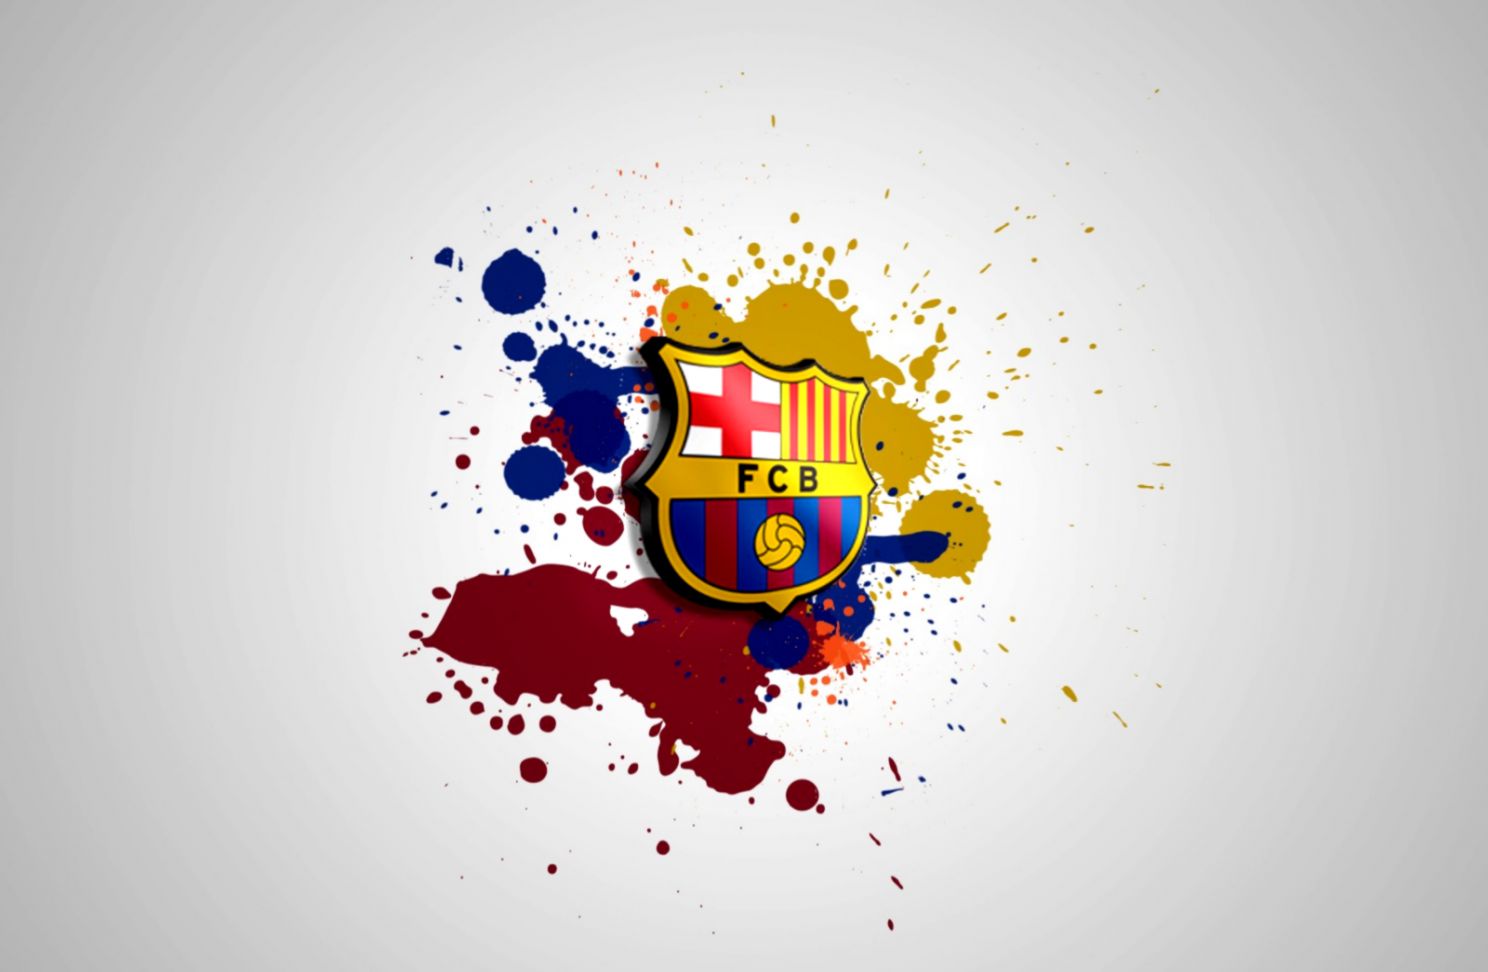 바르셀로나 벽지 3d,그래픽 디자인,삽화,제도법,폰트,상징